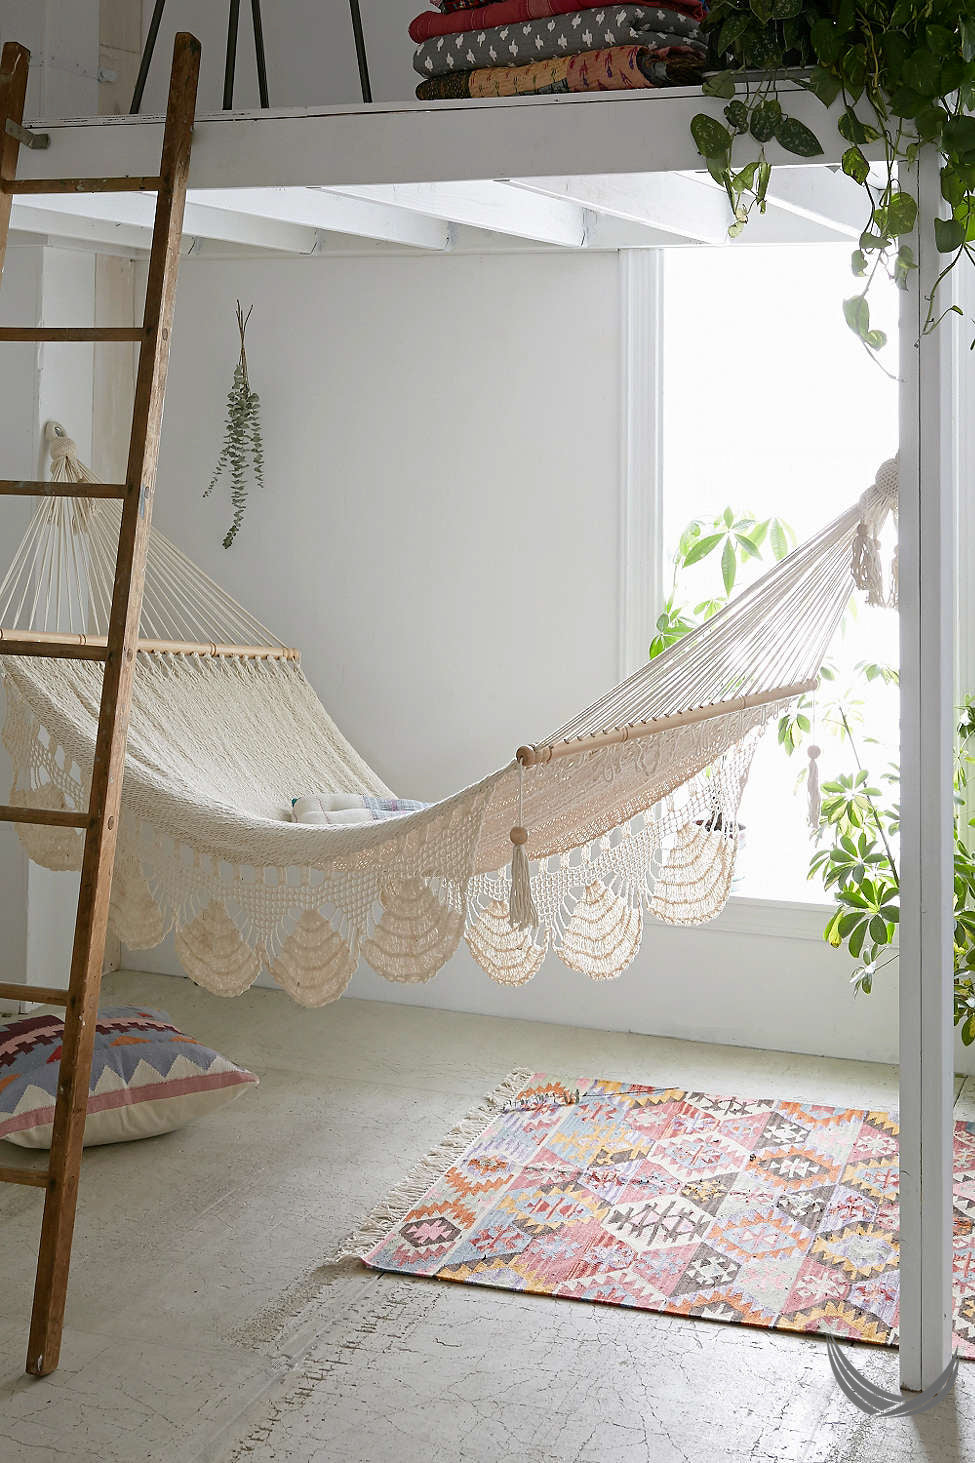 indoor handwoven hammock under a mezzanine